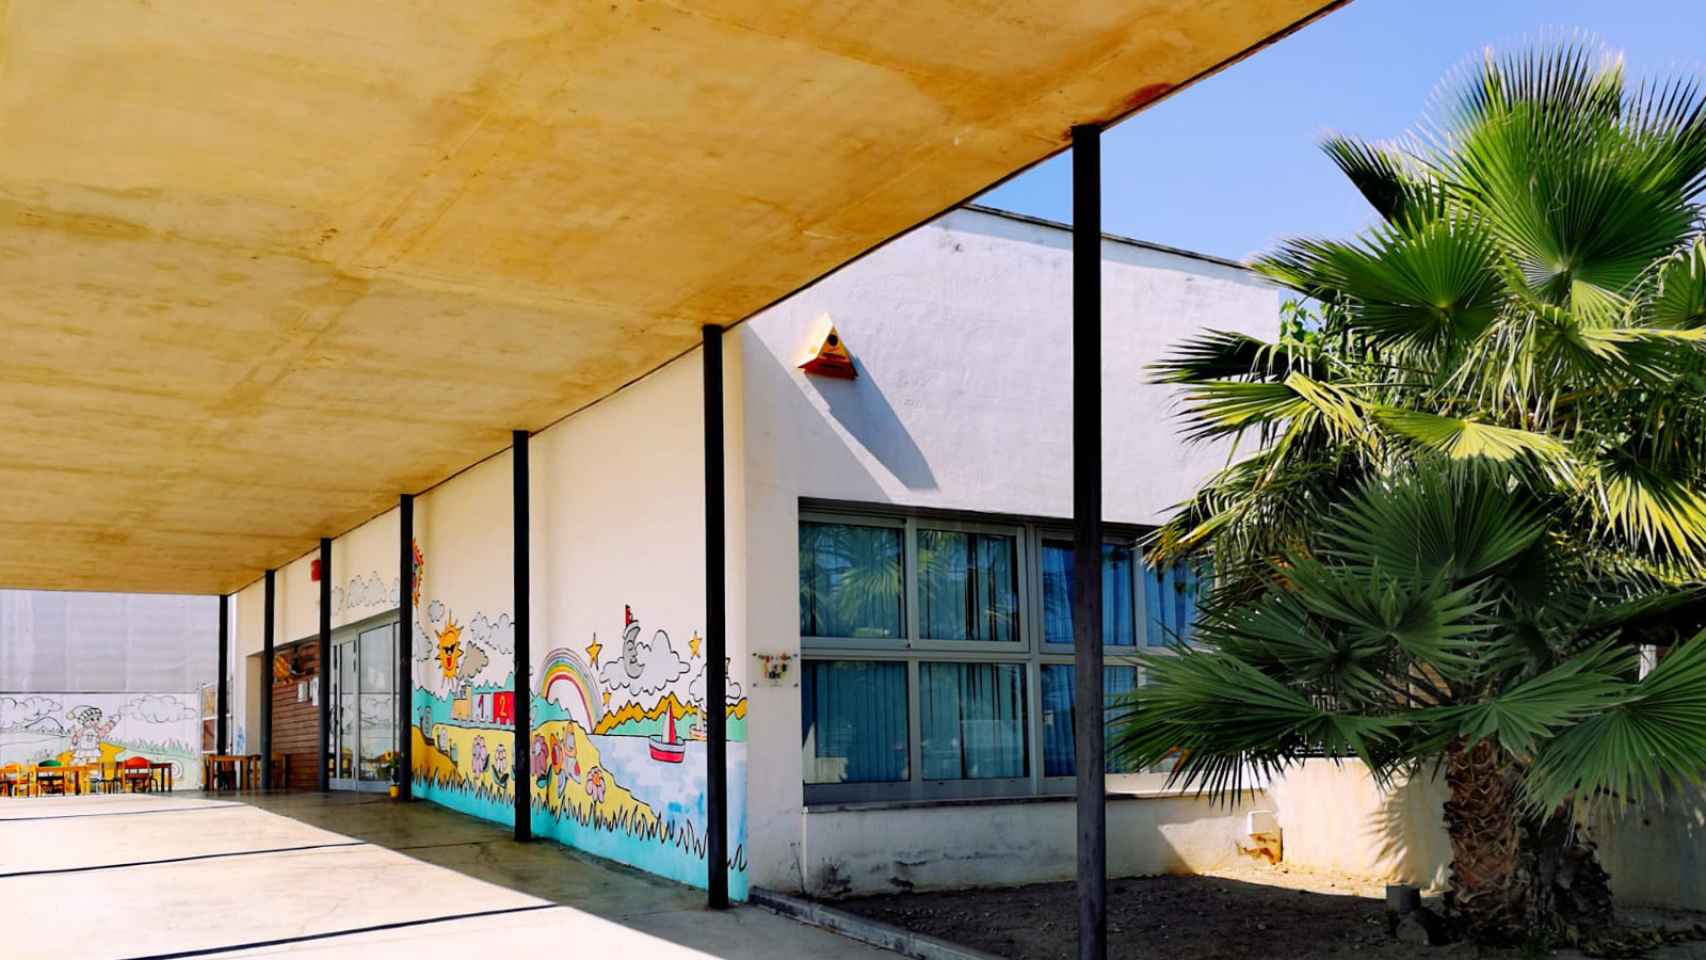 Escuela infantil el Petit Trenet, en Calafell, una de las guarderías afectadas por la presunta intoxicación alimentaria